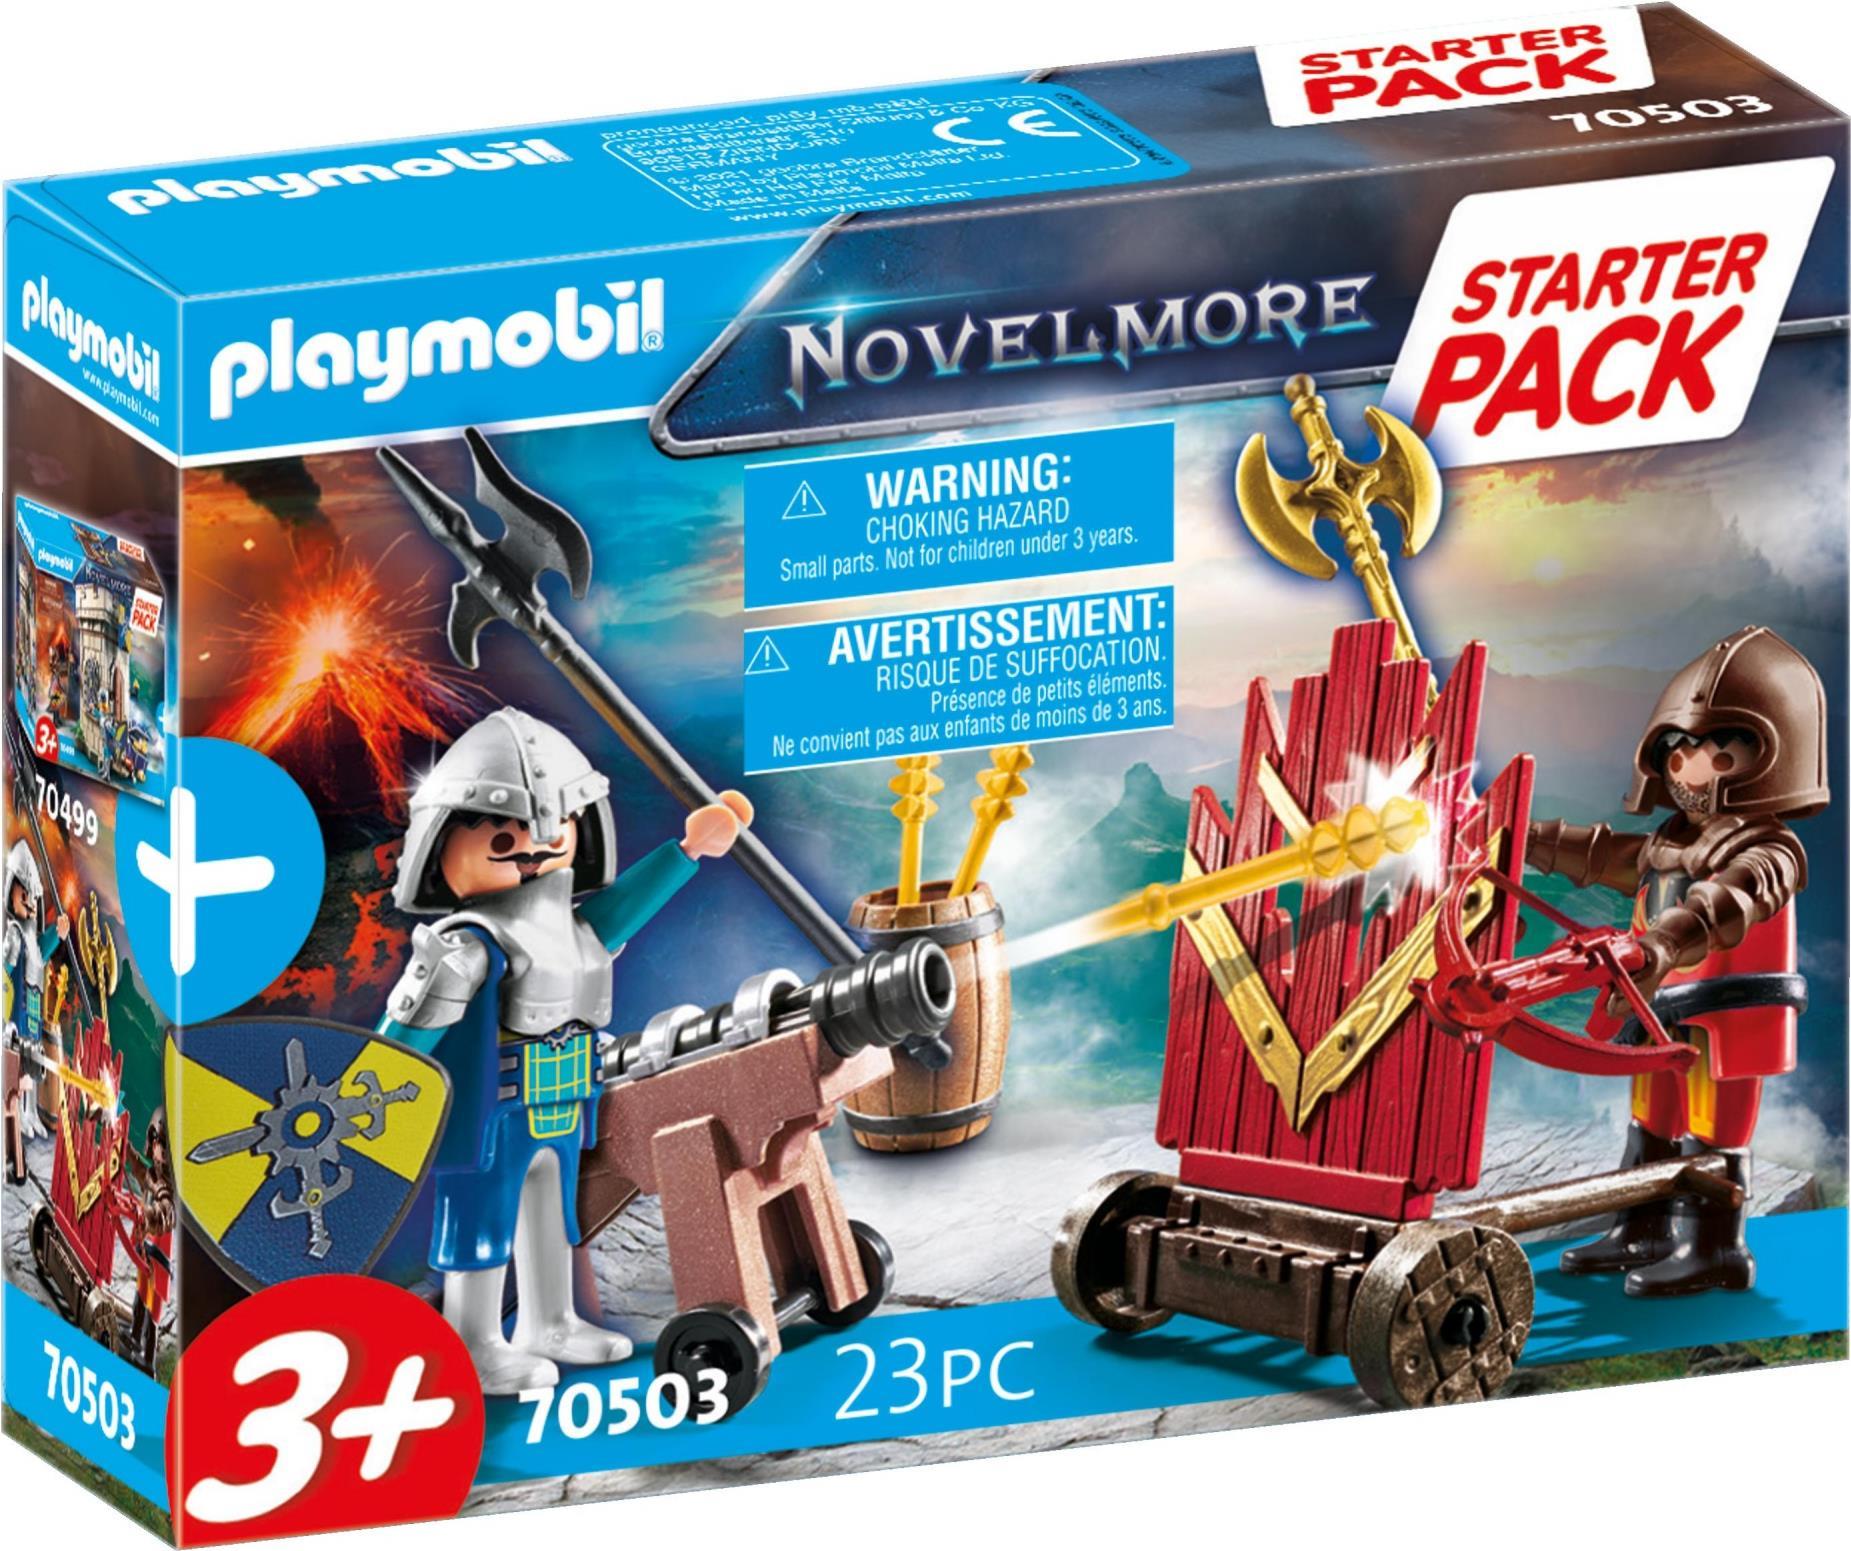 Playmobil Novelmore Starter Pack (70503)